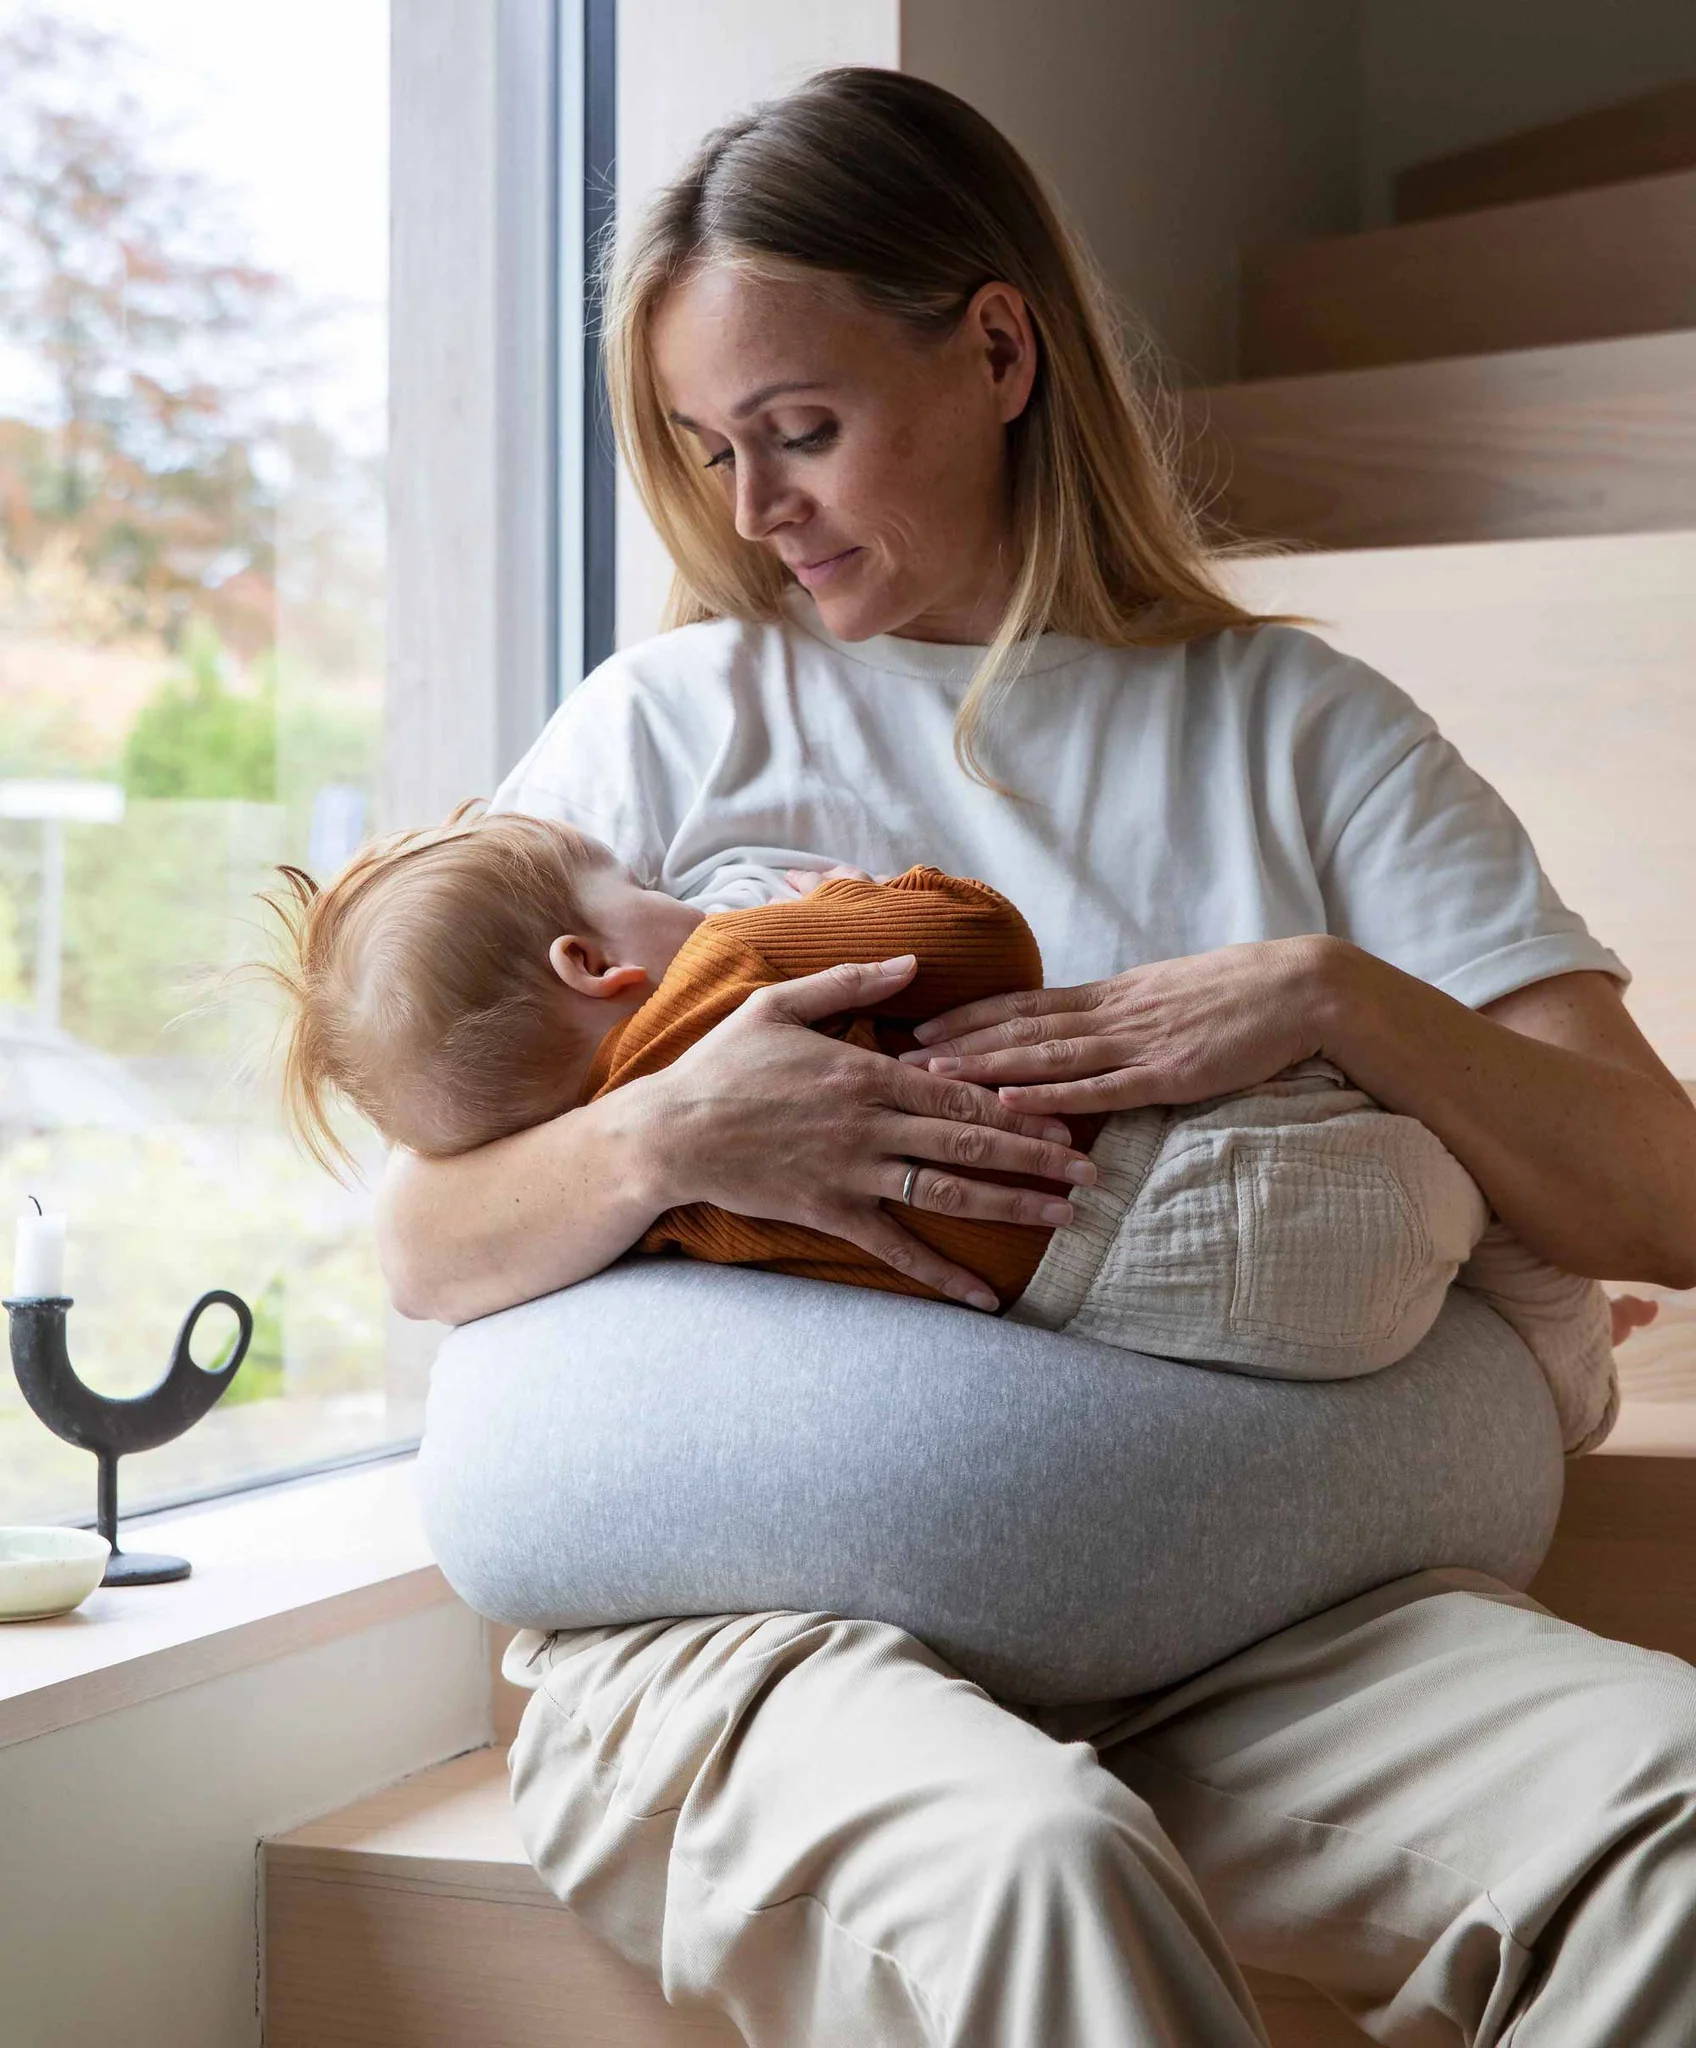 Can bottle feeding be as bonding as breastfeeding? – BIBS